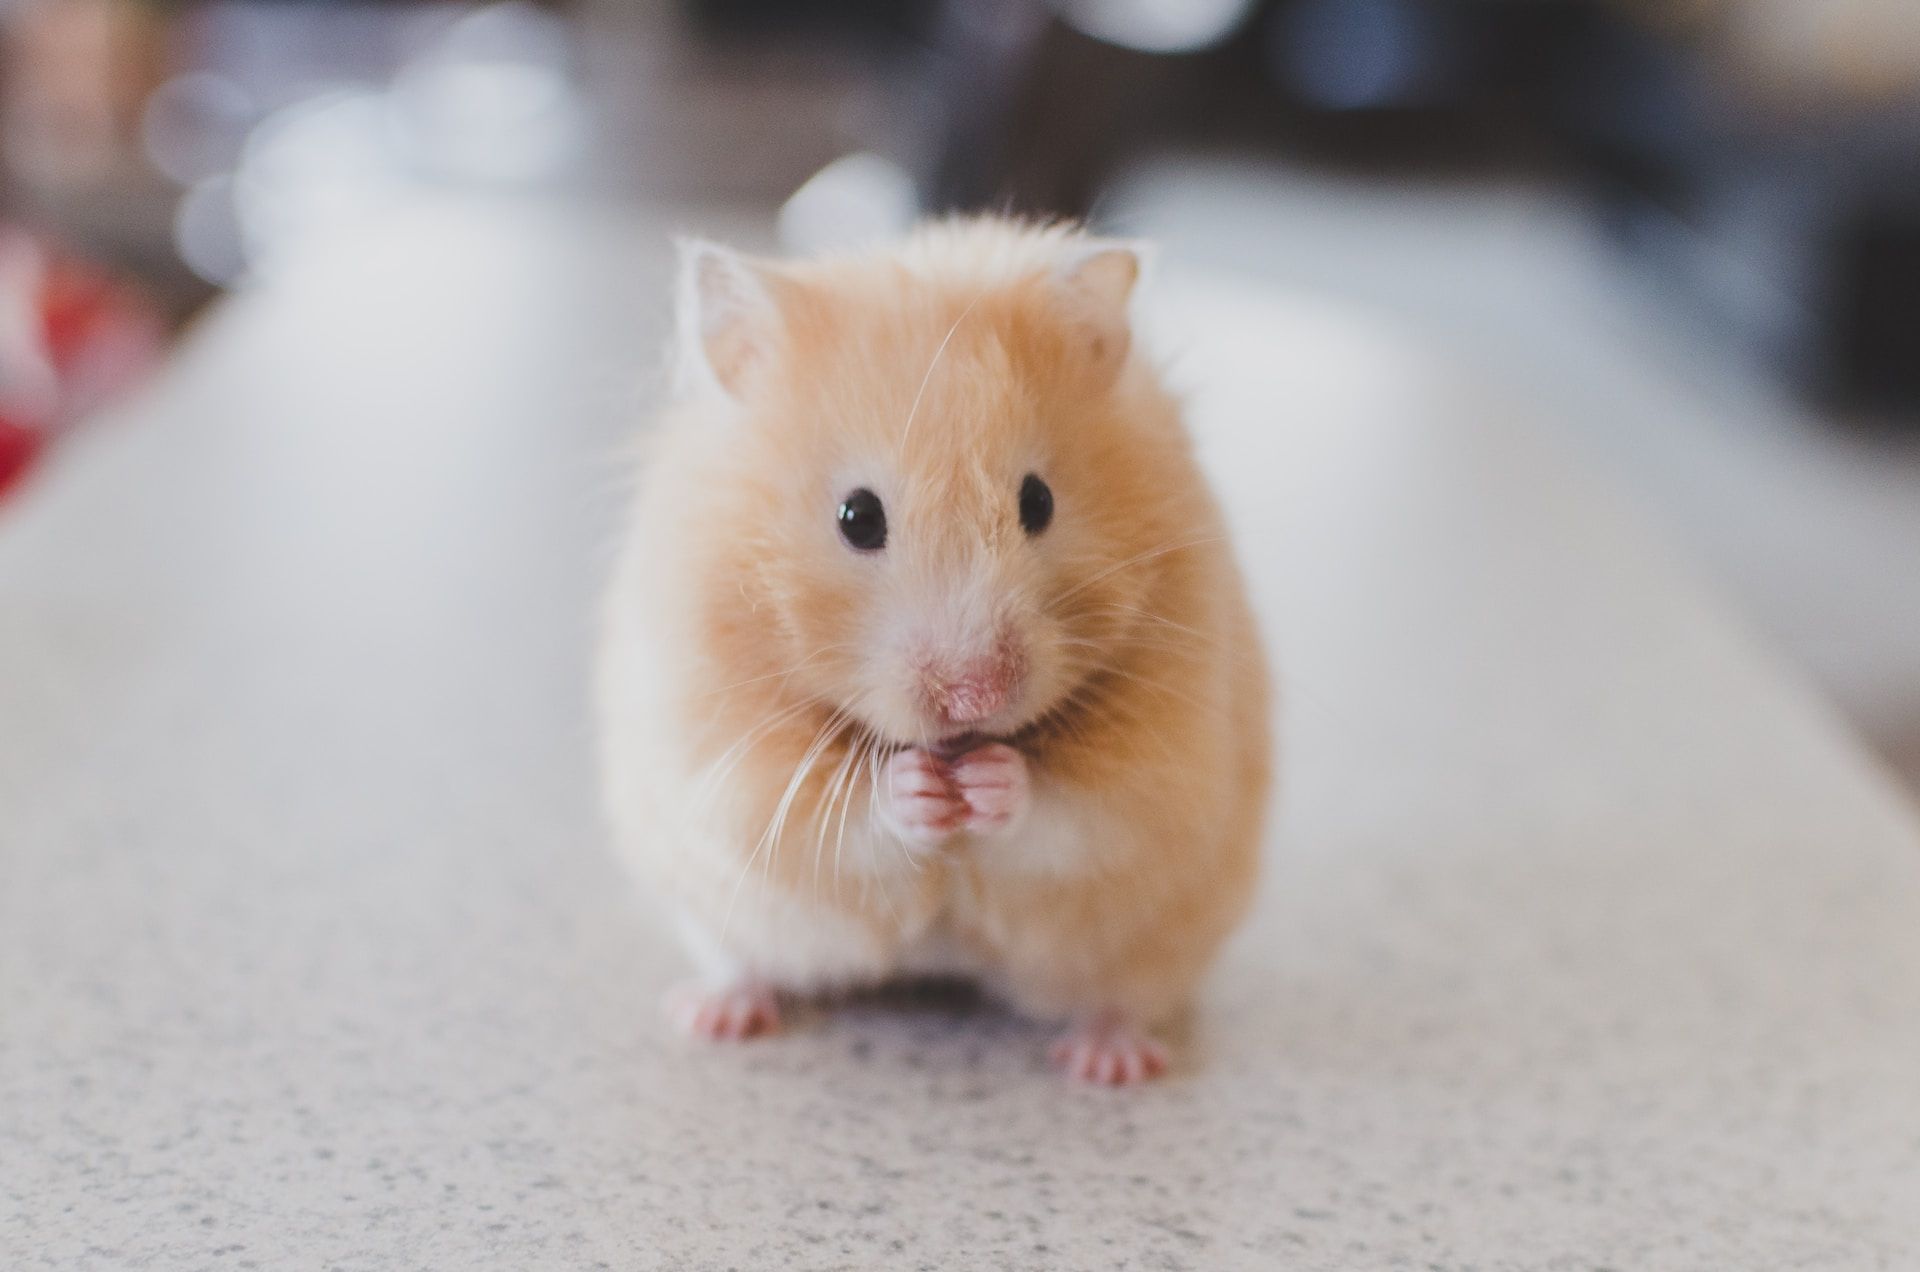 Un hamster avec ses pattes comme en prière - Photo de Ricky Kharawala sur https://unsplash.com/fr/photos/adK3Vu70DEQ